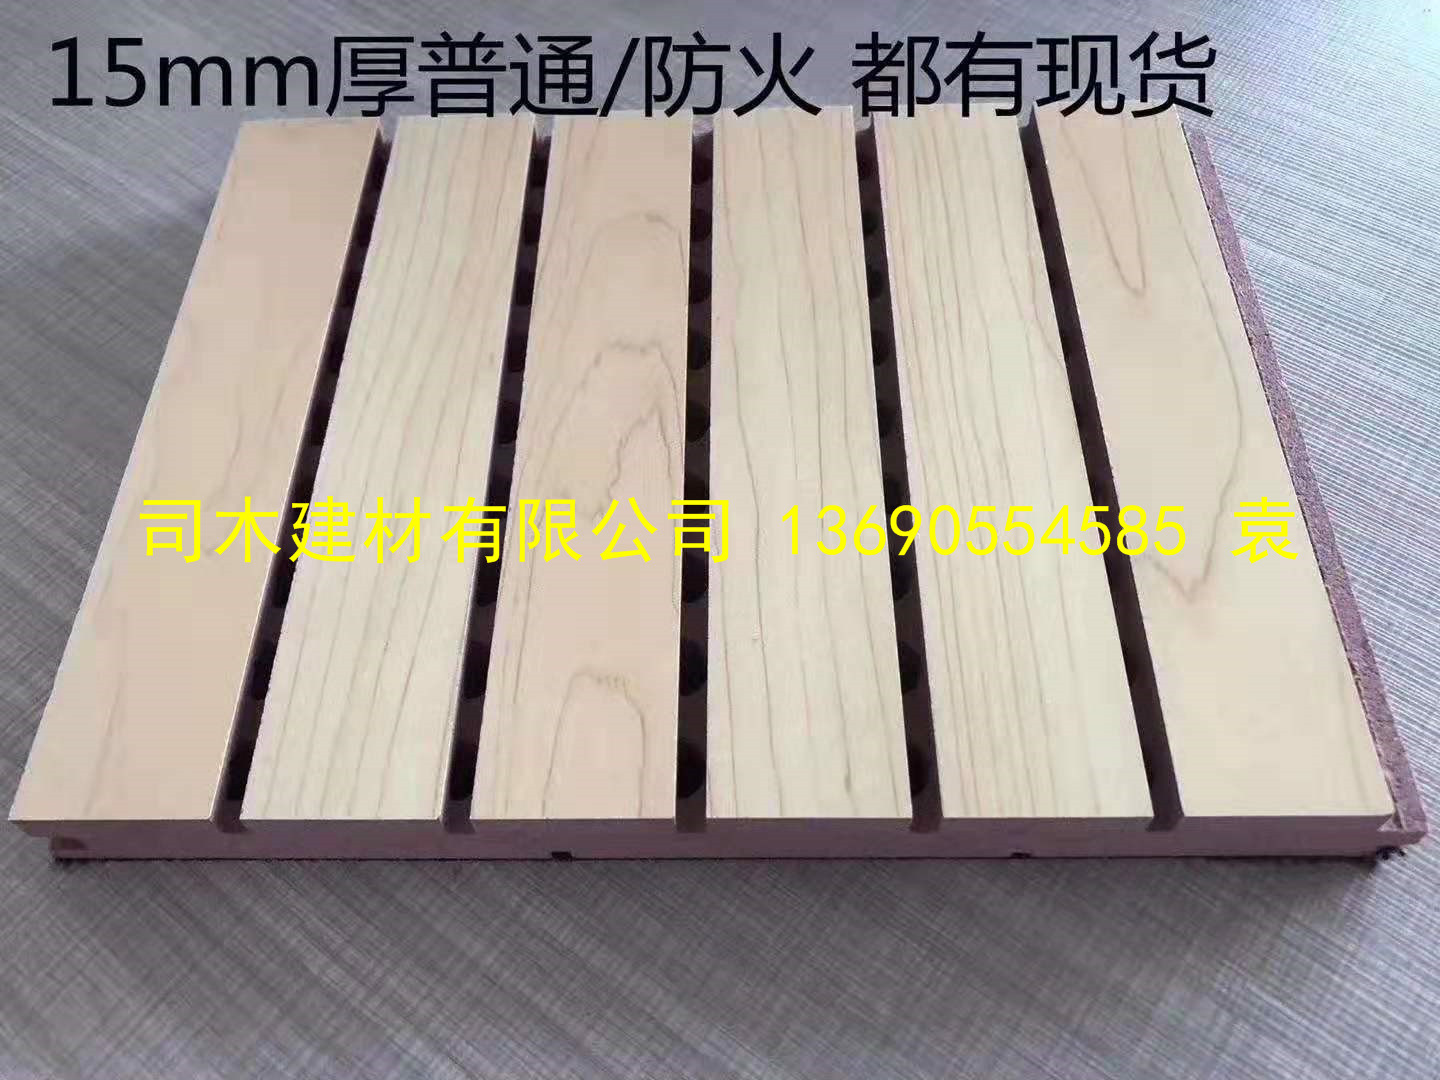 孔木吸音板 环保木质穿孔吸声板